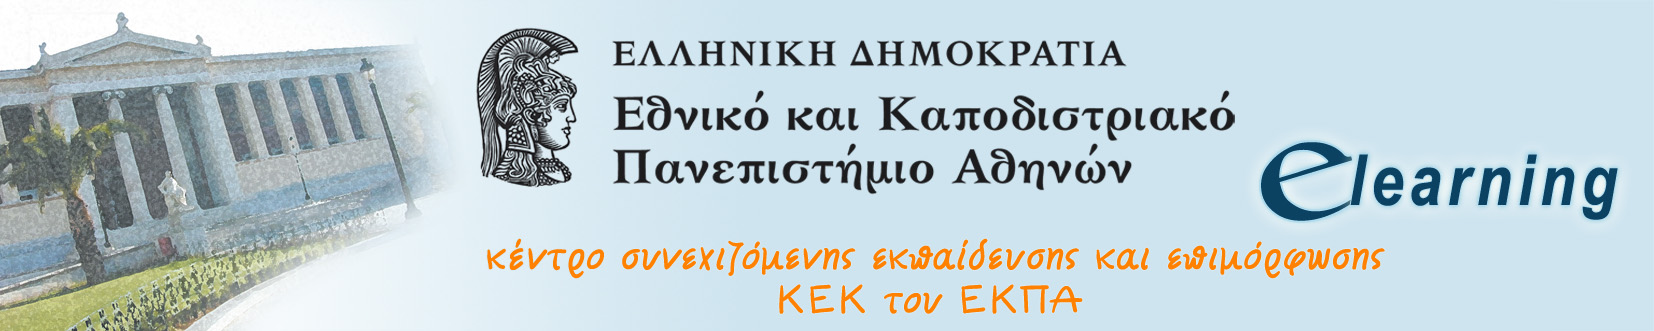 Περίοδος Αιτήσεων για τα Προγράμματα των Παιδαγωγικών και της Ειδικής Αγωγής από το E-Learning του Πανεπιστημίου Αθηνών